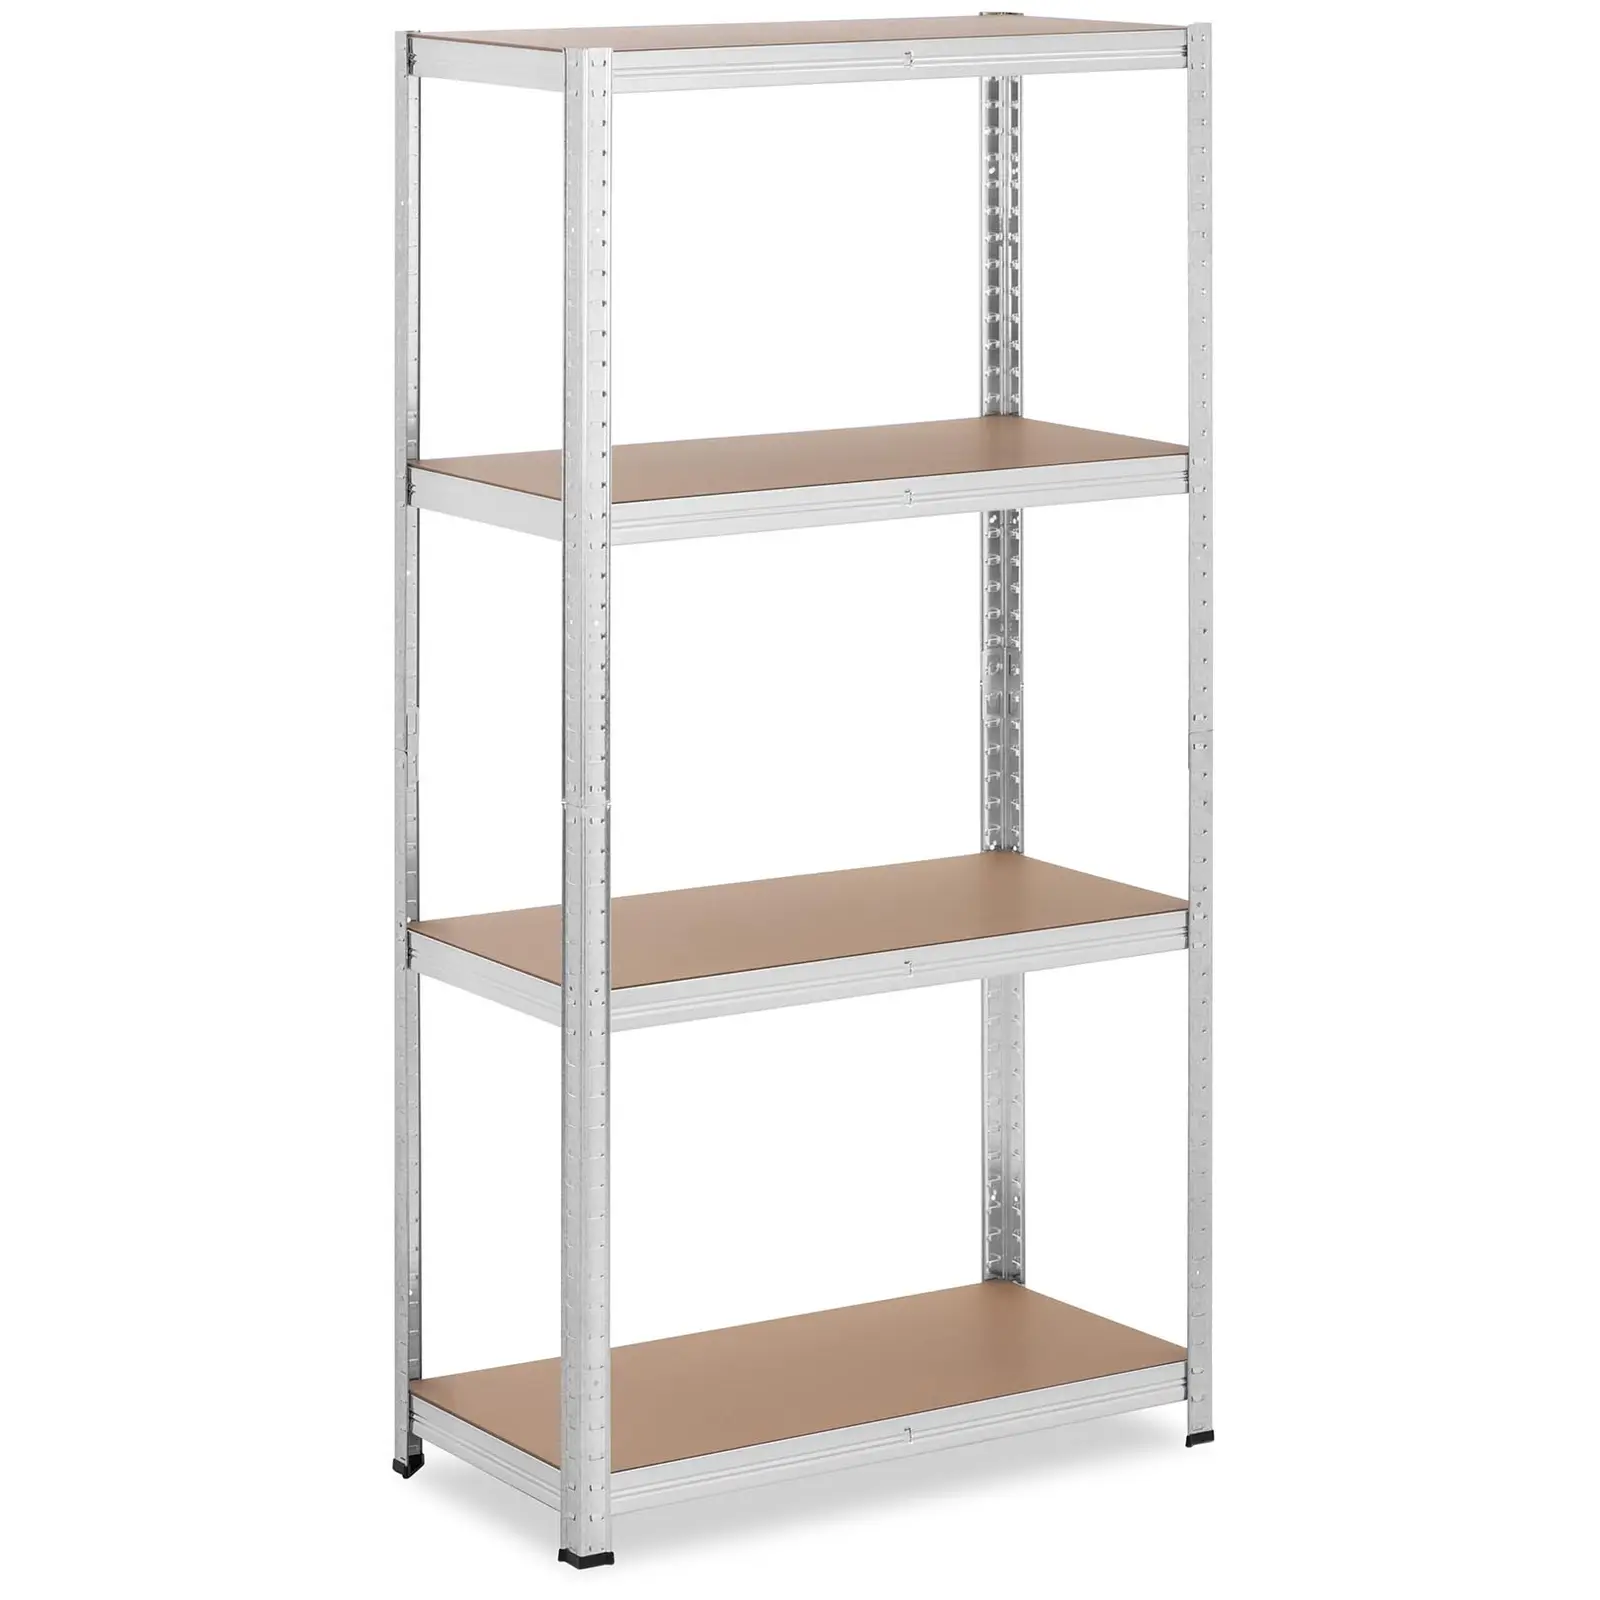 Metal storage rack - 80 x 40 x 160 cm - for 4 x 80 kg - Grey